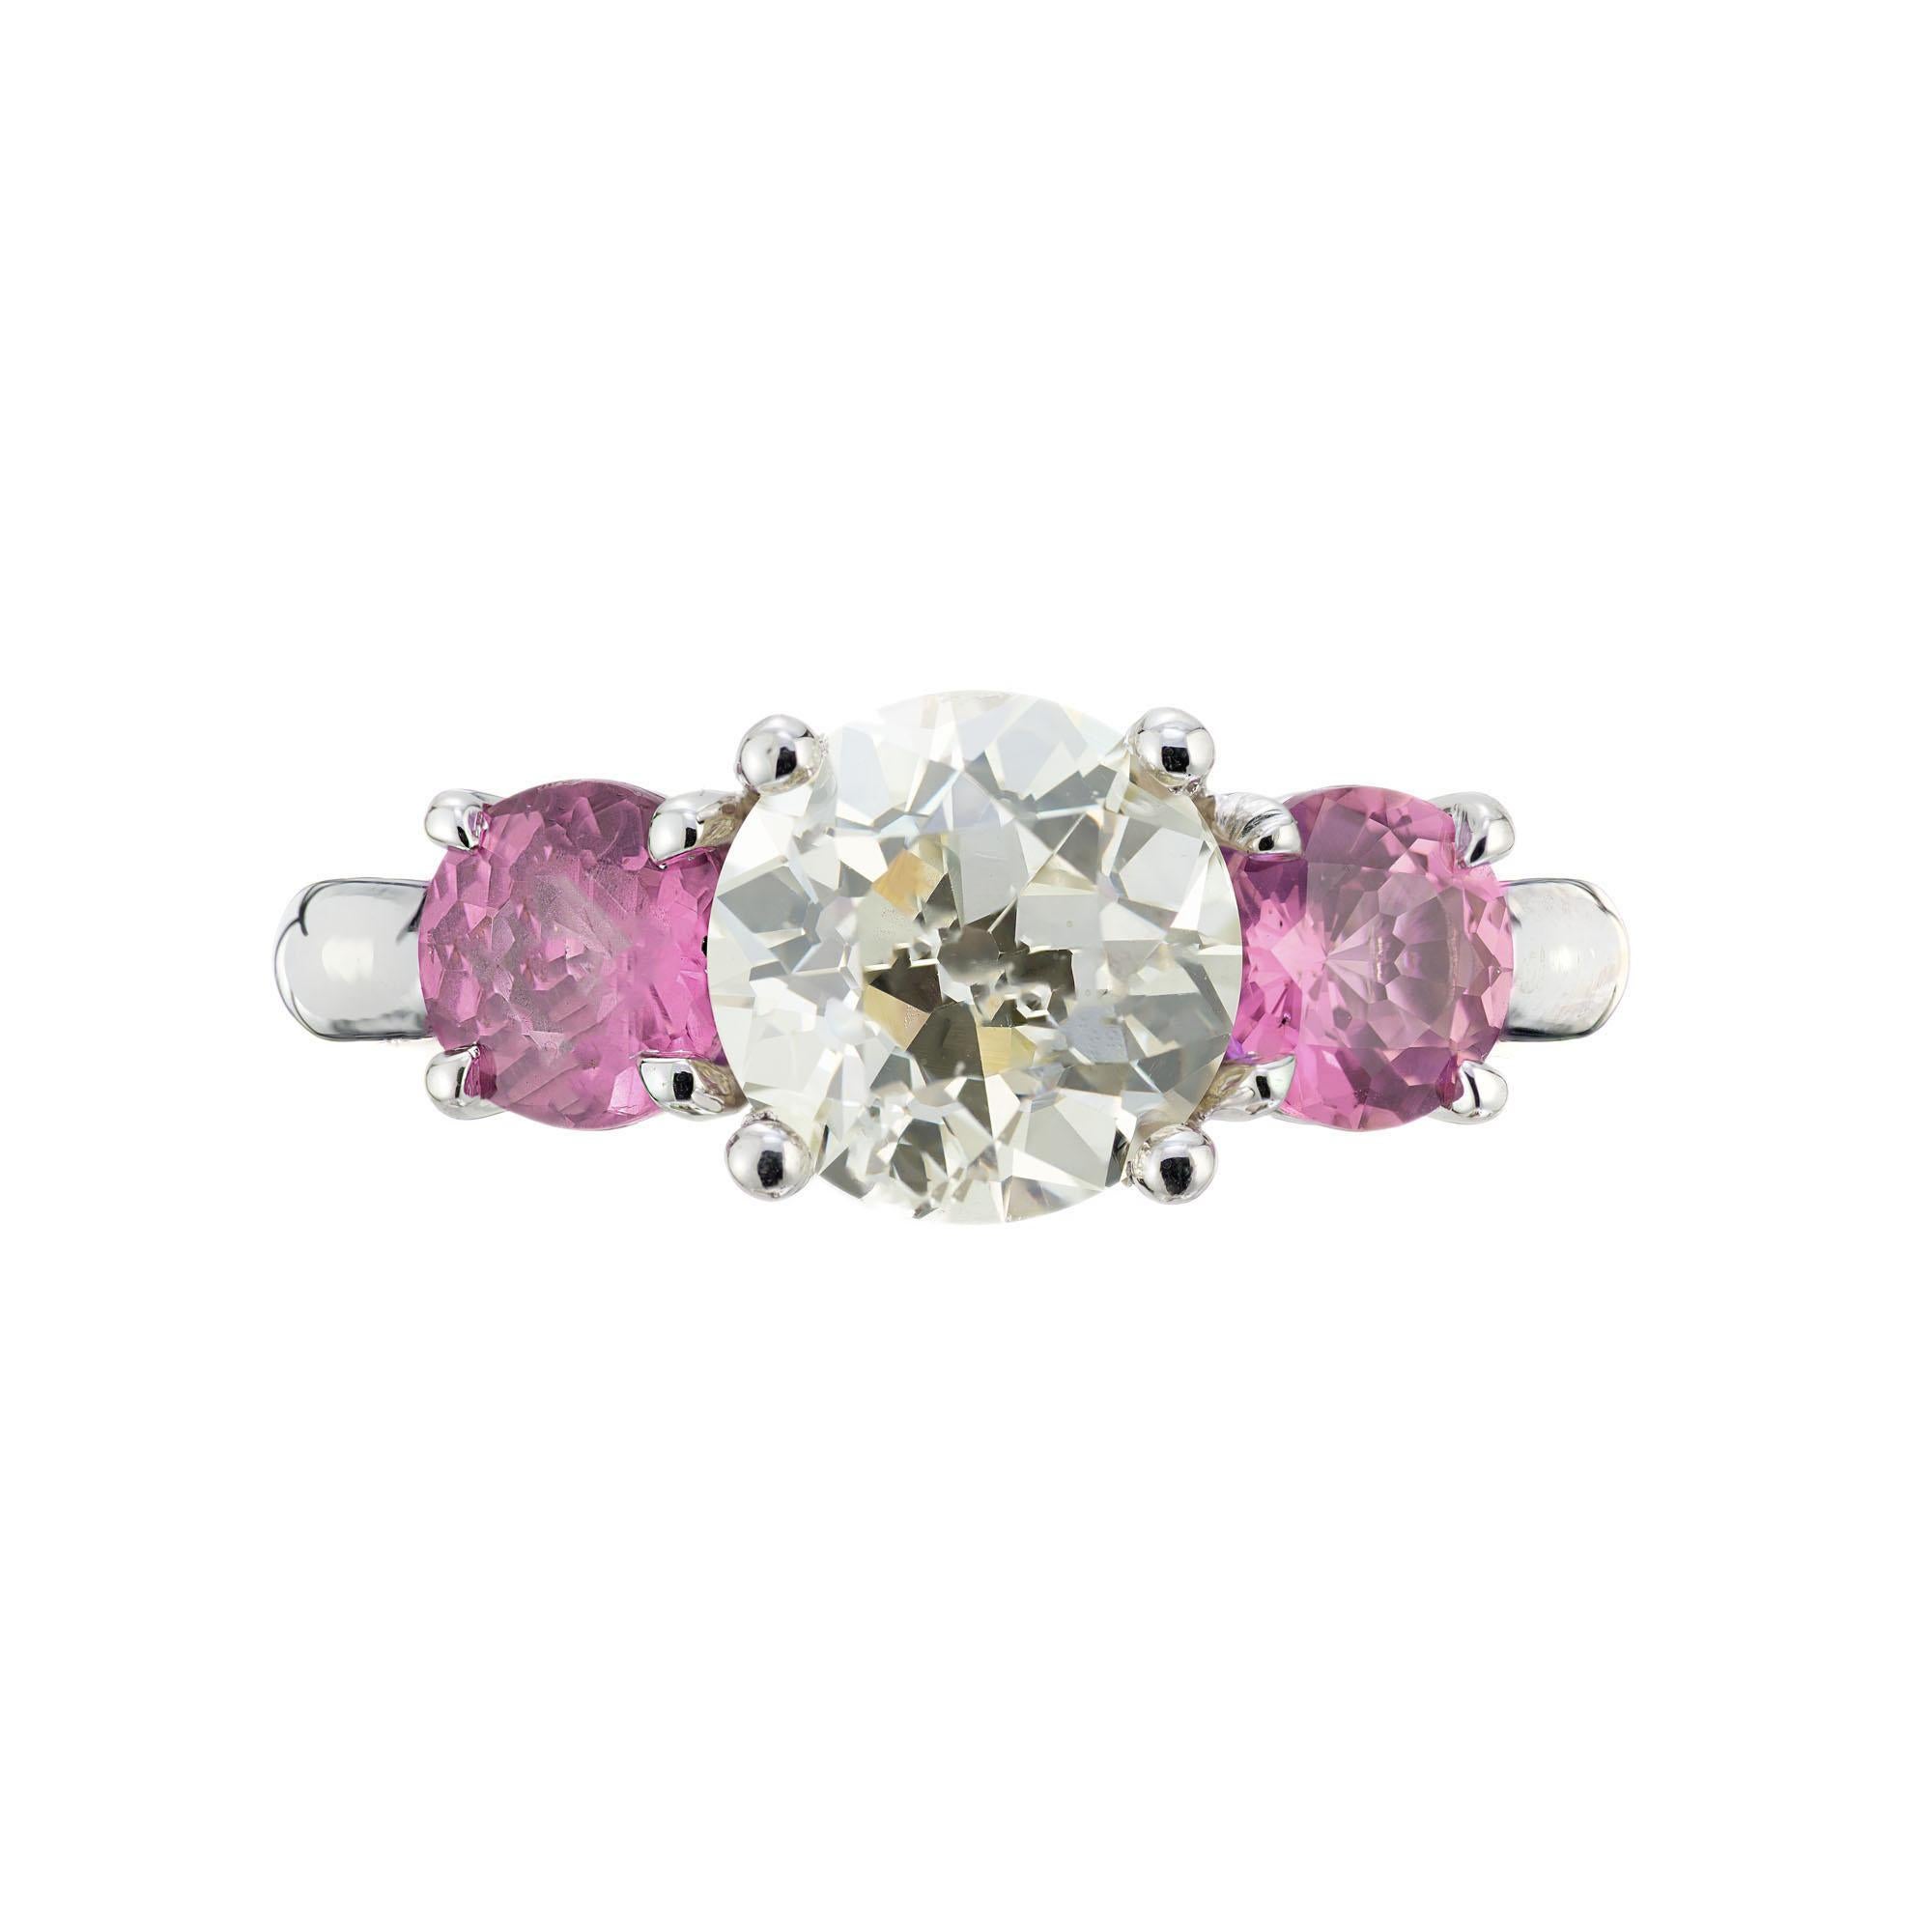 Bague de fiançailles à trois pierres en platine, saphir rose et diamant. Diamant central de taille européenne ancienne certifié par le GIA, magnifiquement mis en valeur par deux saphirs ronds naturels de couleur rose pourpre. Serti dans une monture